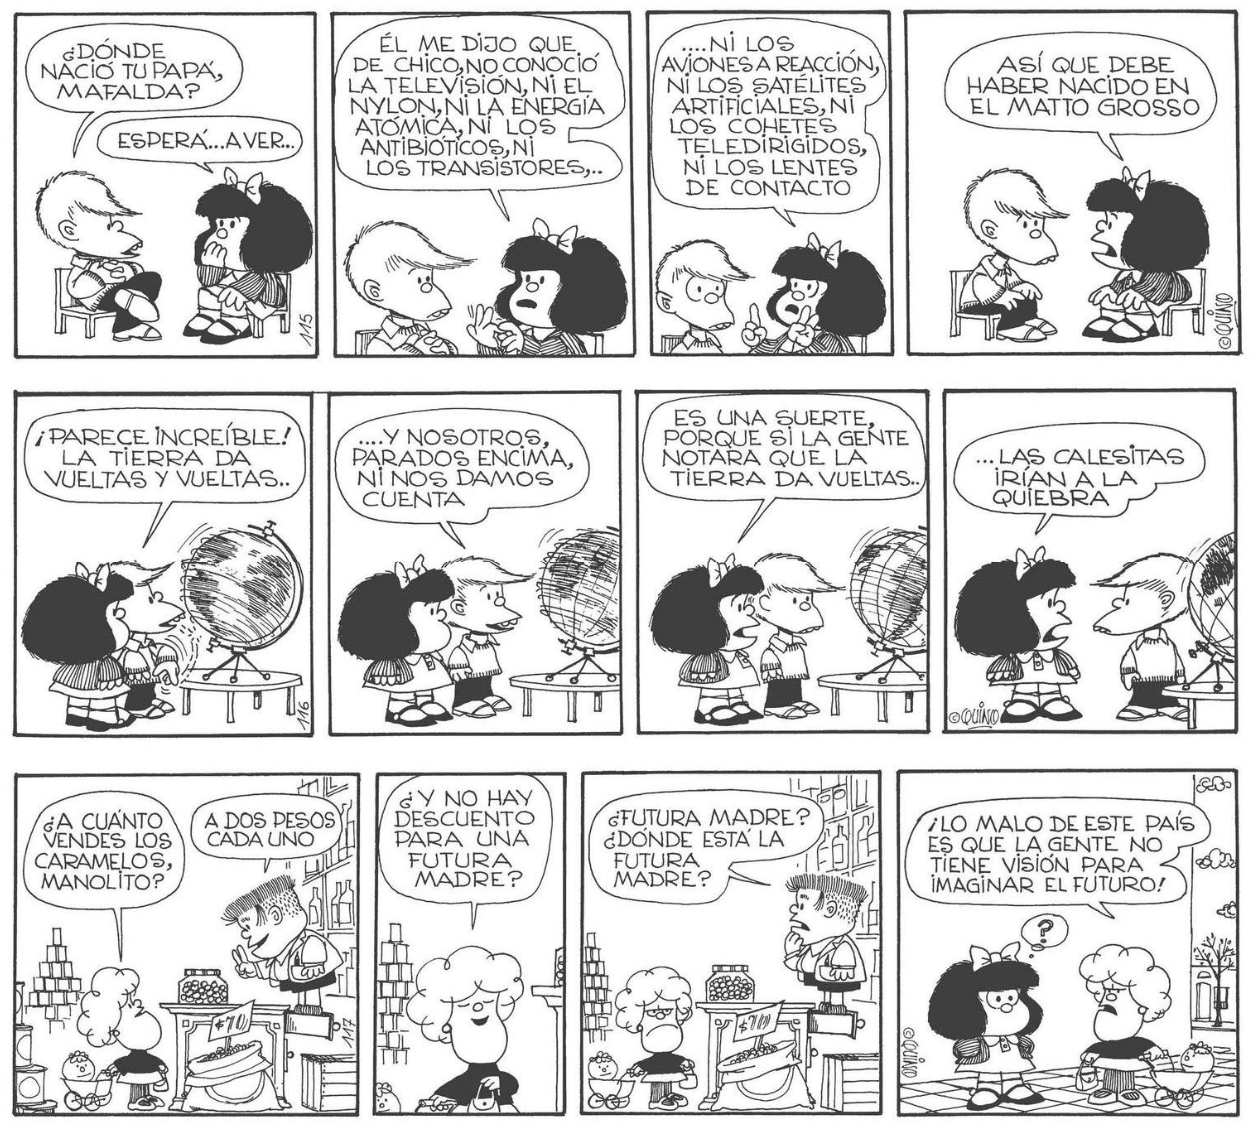 Los invidentes también podrán disfrutar de los cómic de Mafalda, ¡por fin en braille! 39